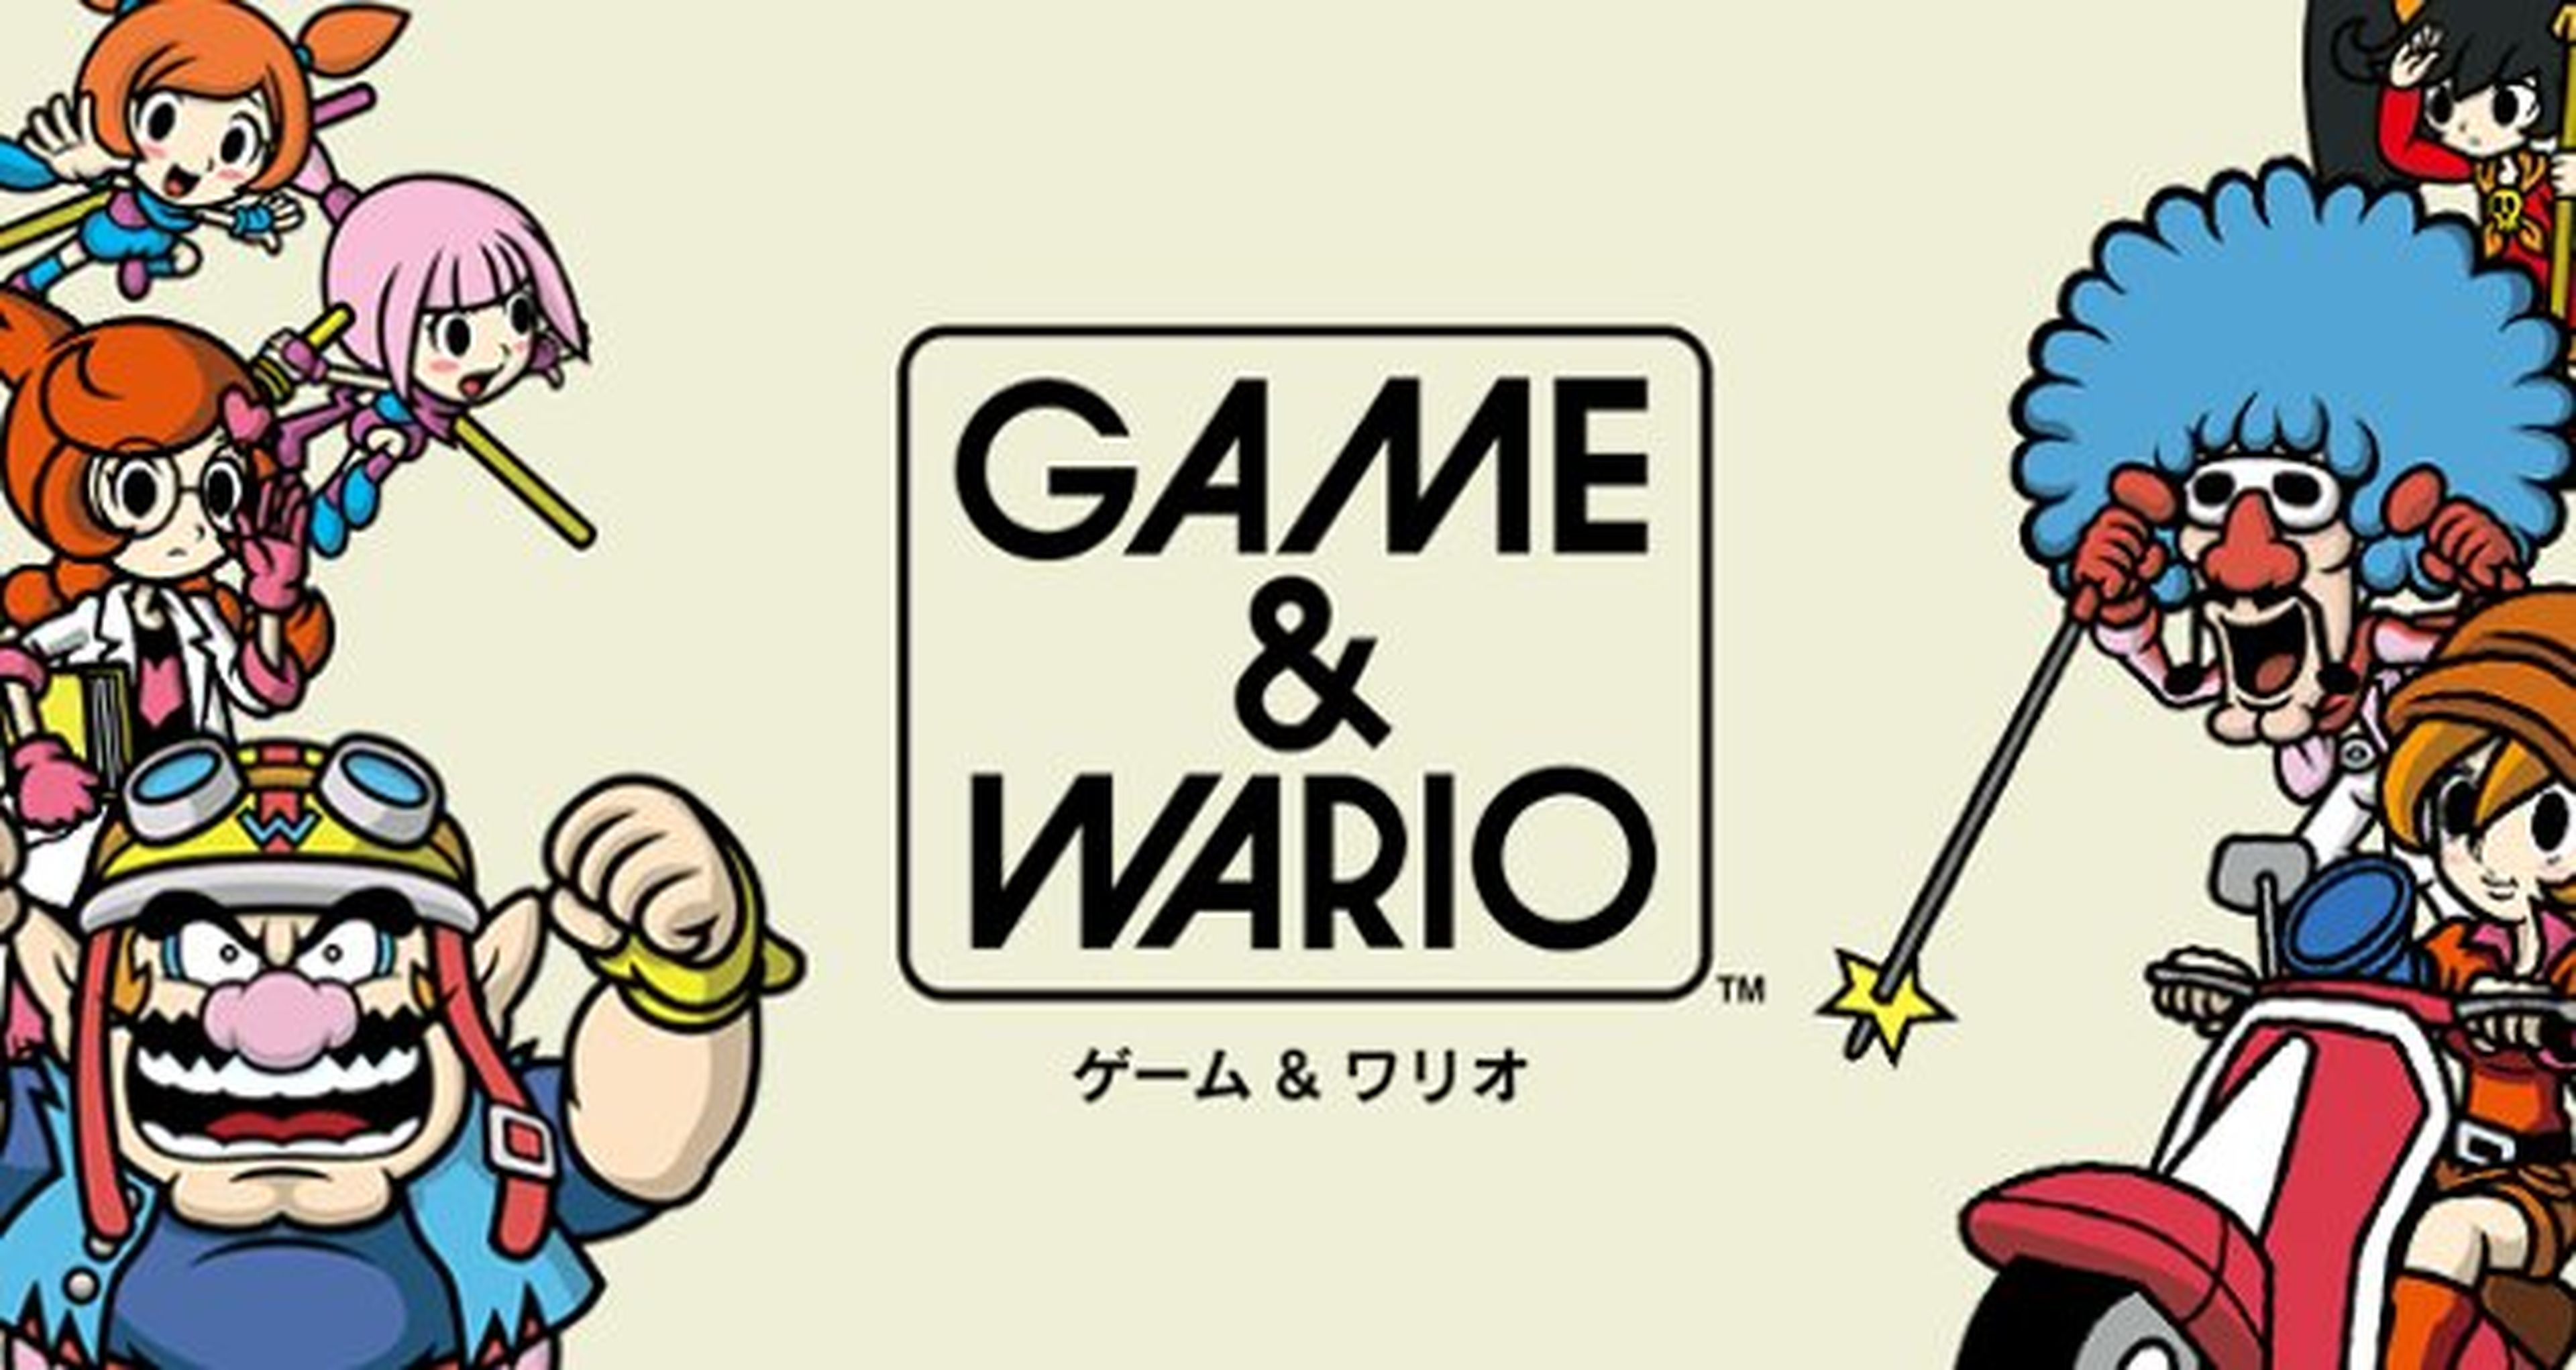 Game & Wario llega a Wii U el 28 de junio